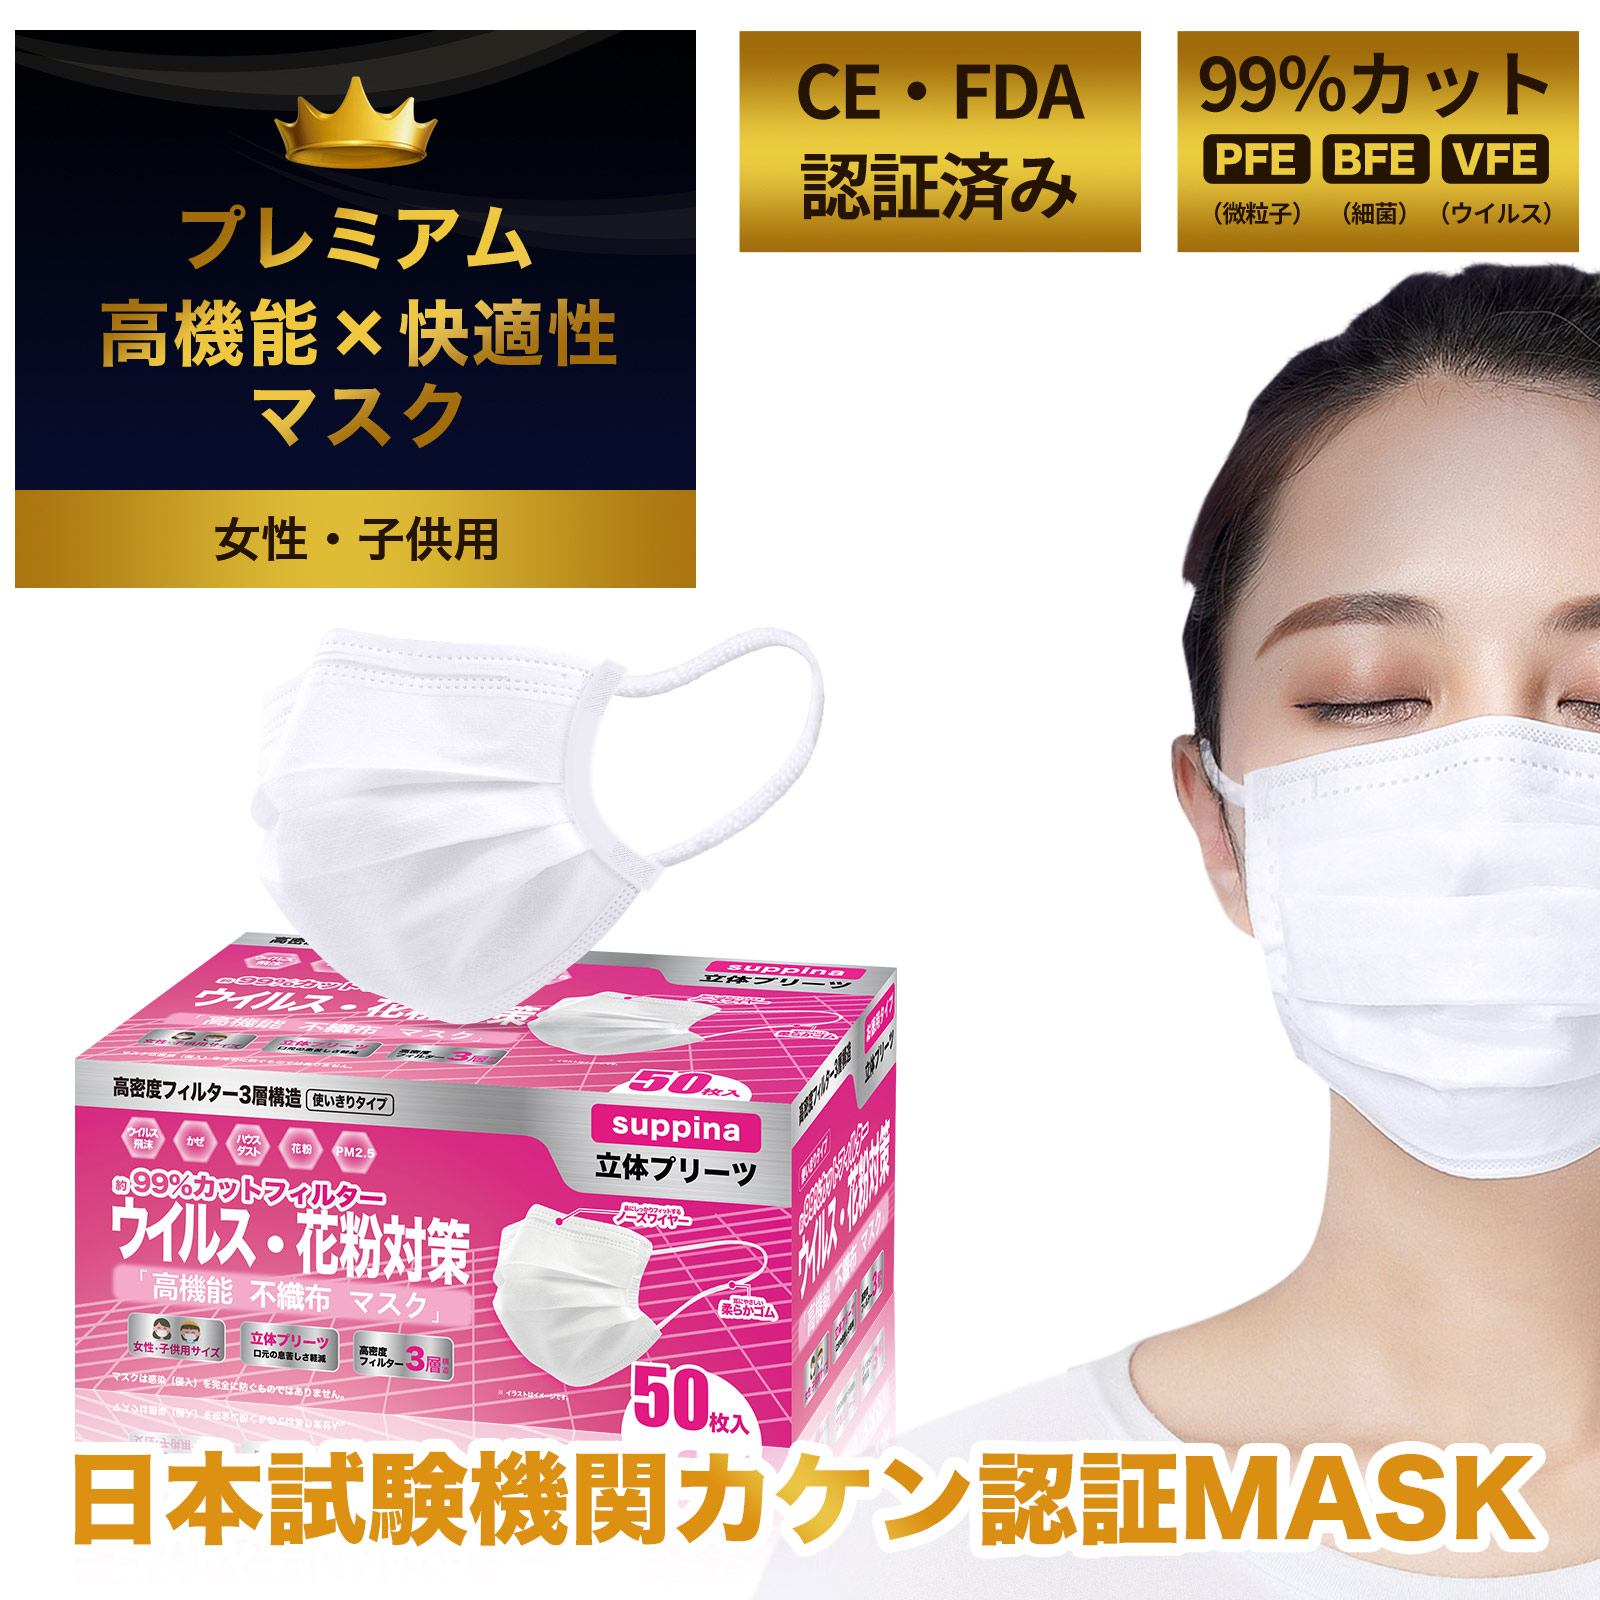 日本機構検査済 Suppina 99 Cut マスク 女性 子供用 小さめサイズ 高機能マスク お徳用 50枚入 Mask 雑貨 Kaei 株式会社 問屋 仕入れ 卸 卸売の専門 仕入れならnetsea